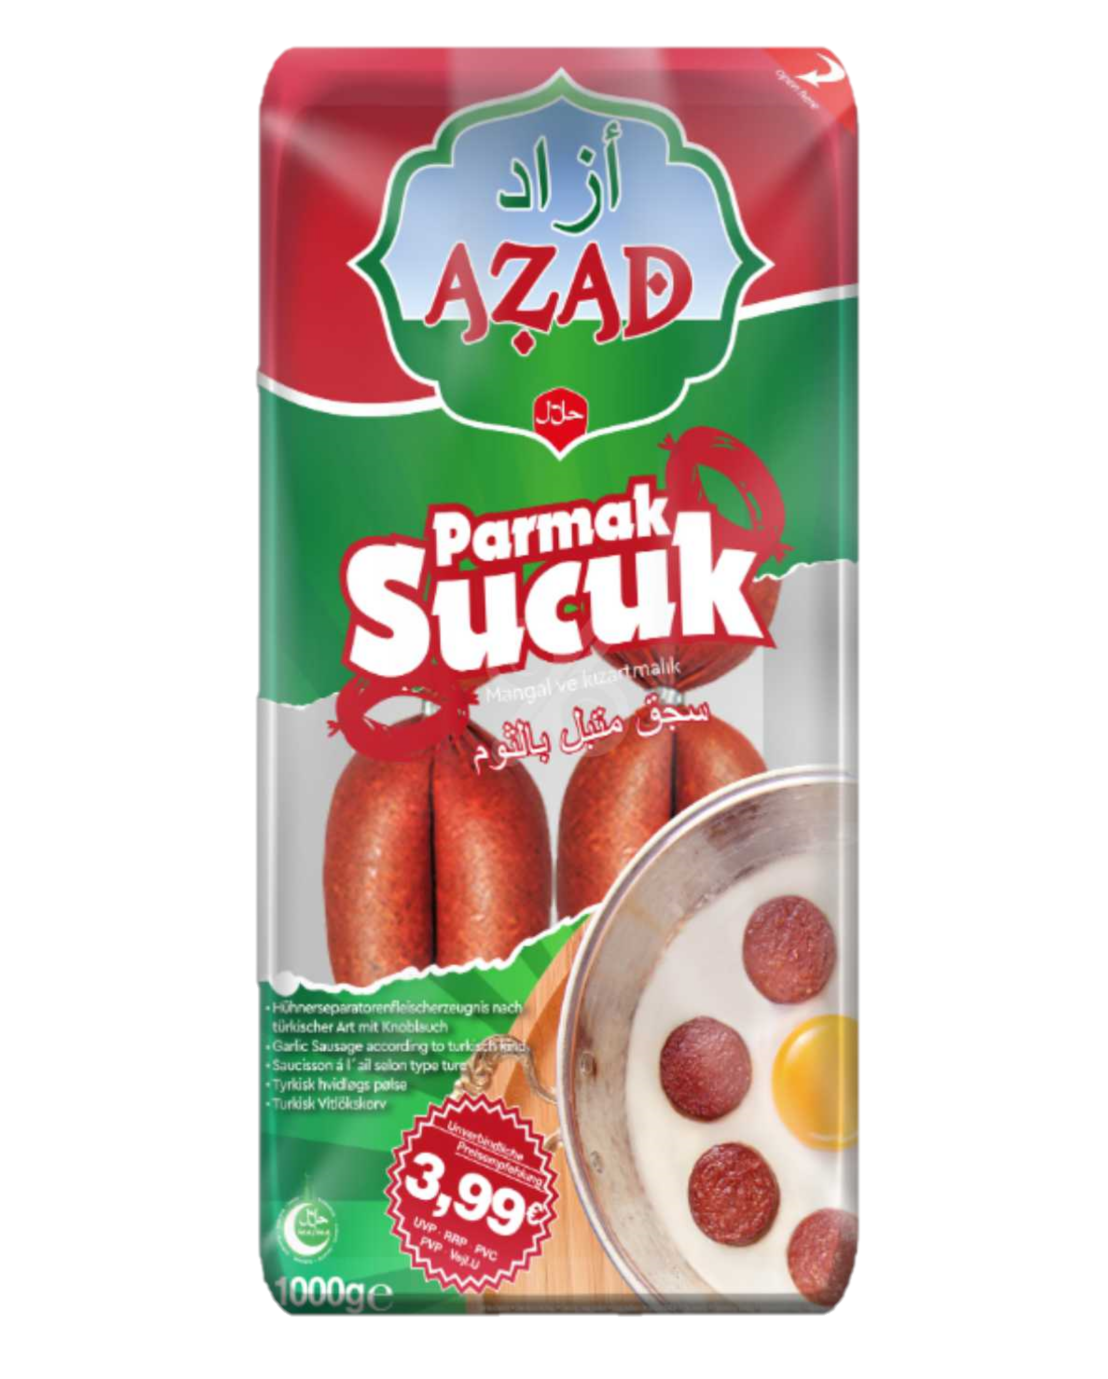 AZAD PARMAK SUCUK 1 KG (saucisson turc)